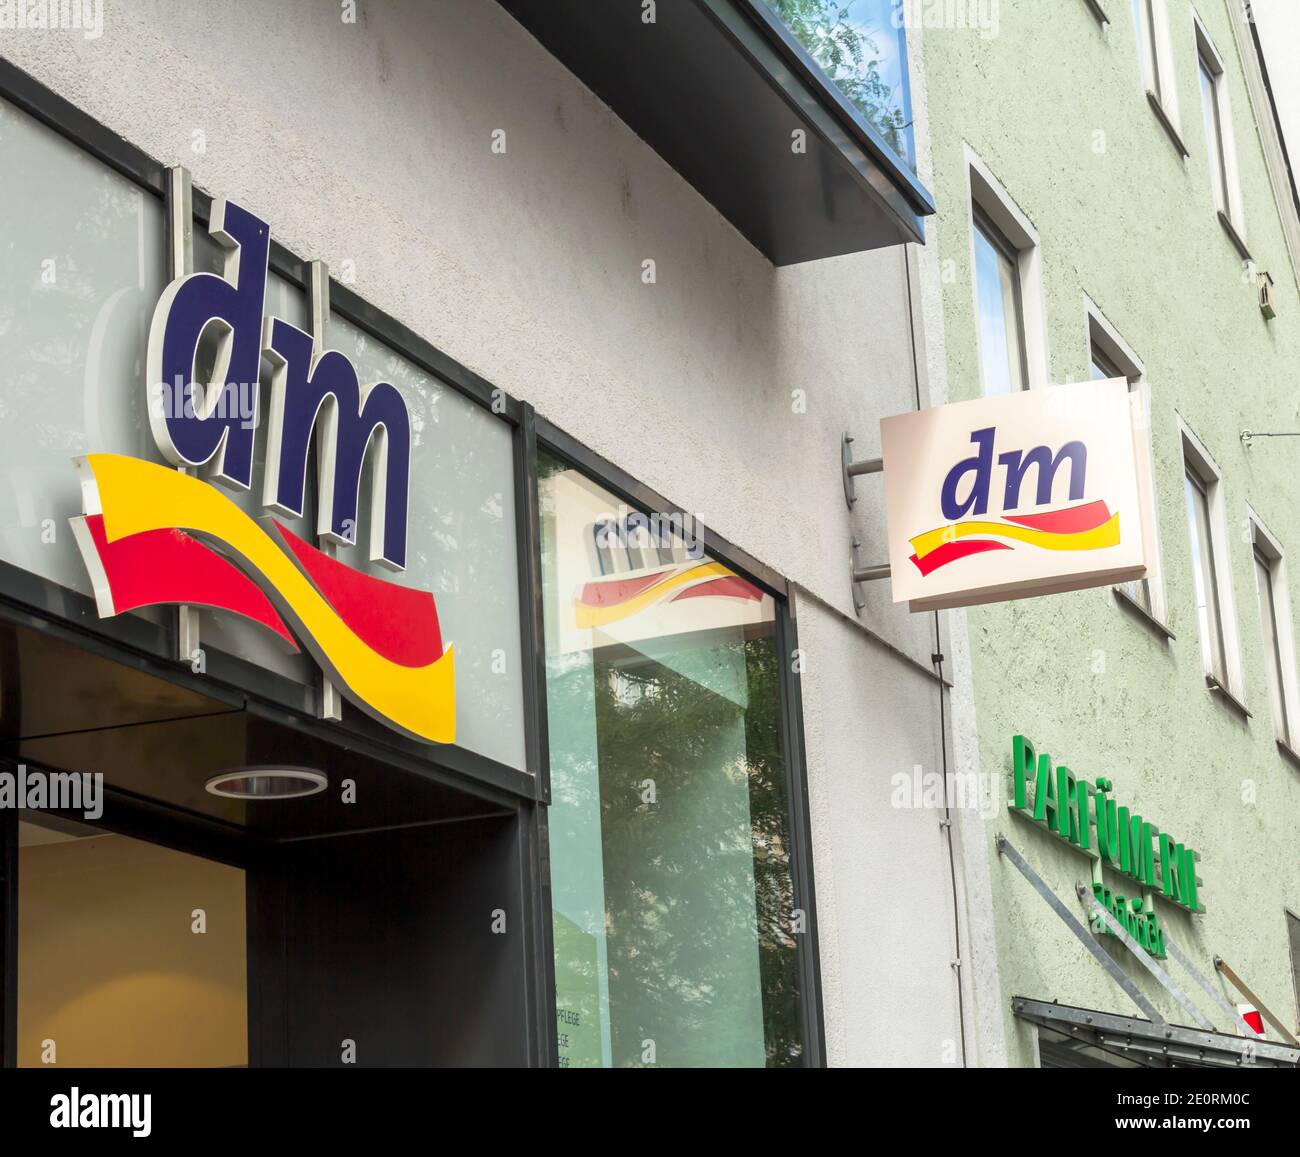 Signe DM drogeriemarkt. Basé à Karlsruhe, DM-drogerie markt est une chaîne  de pharmacies de détail pour les cosmétiques, les soins de santé et les  produits ménagers Photo Stock - Alamy